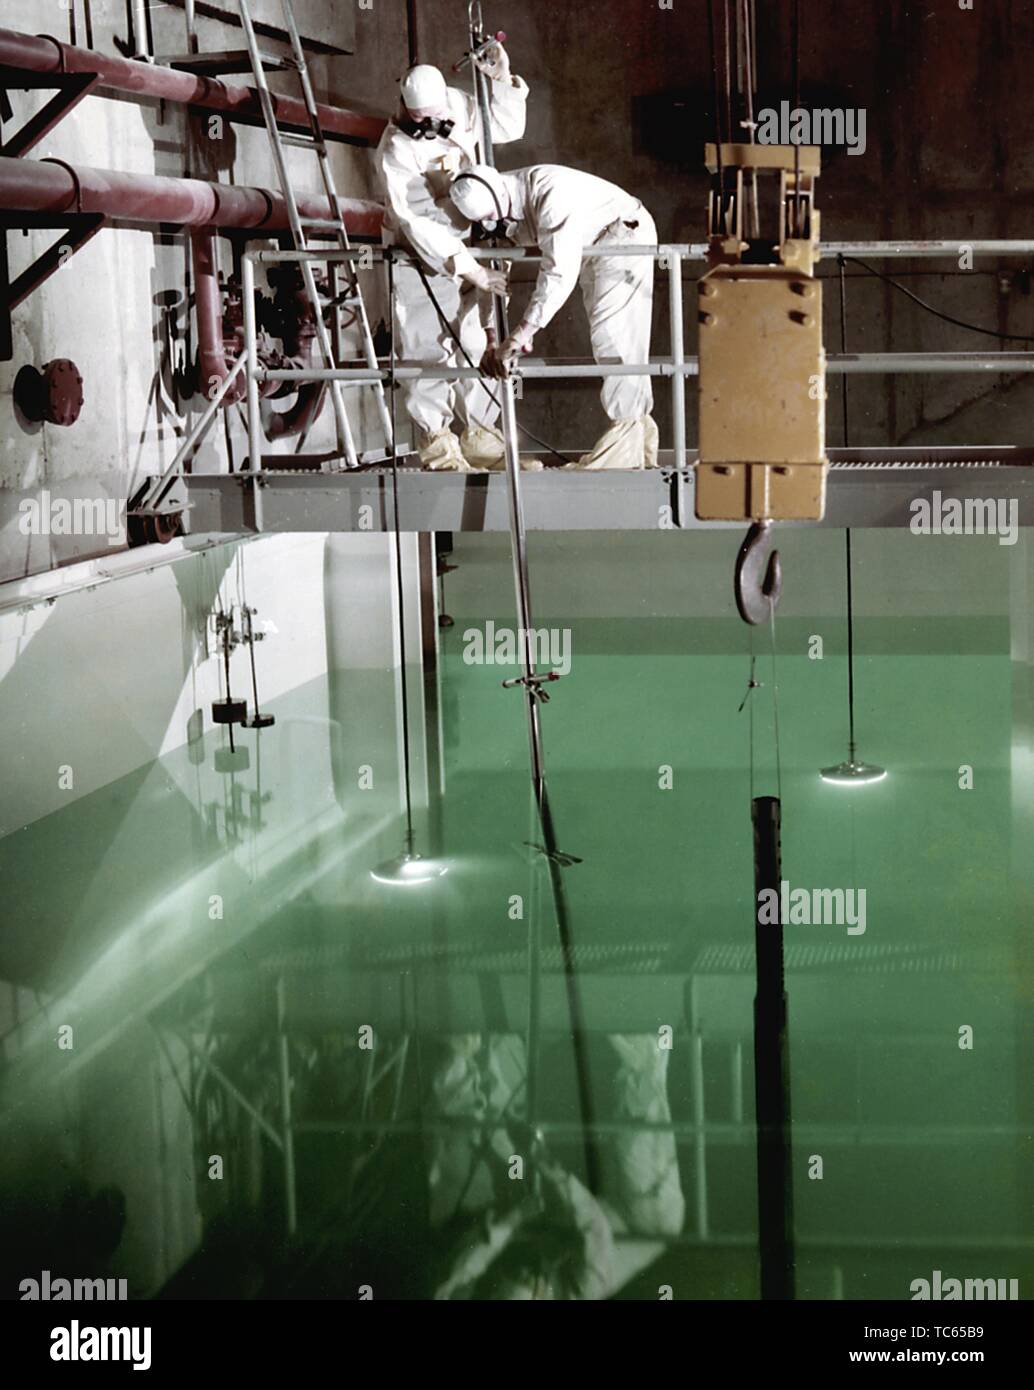 I tecnici della NASA la manipolazione di sicurezza di spessore di stelo di comando in un canale d'acqua in laboratorio a caldo, 1961. Immagine cortesia Nazionale Aeronautica e Spaziale Administration (NASA). () Foto Stock